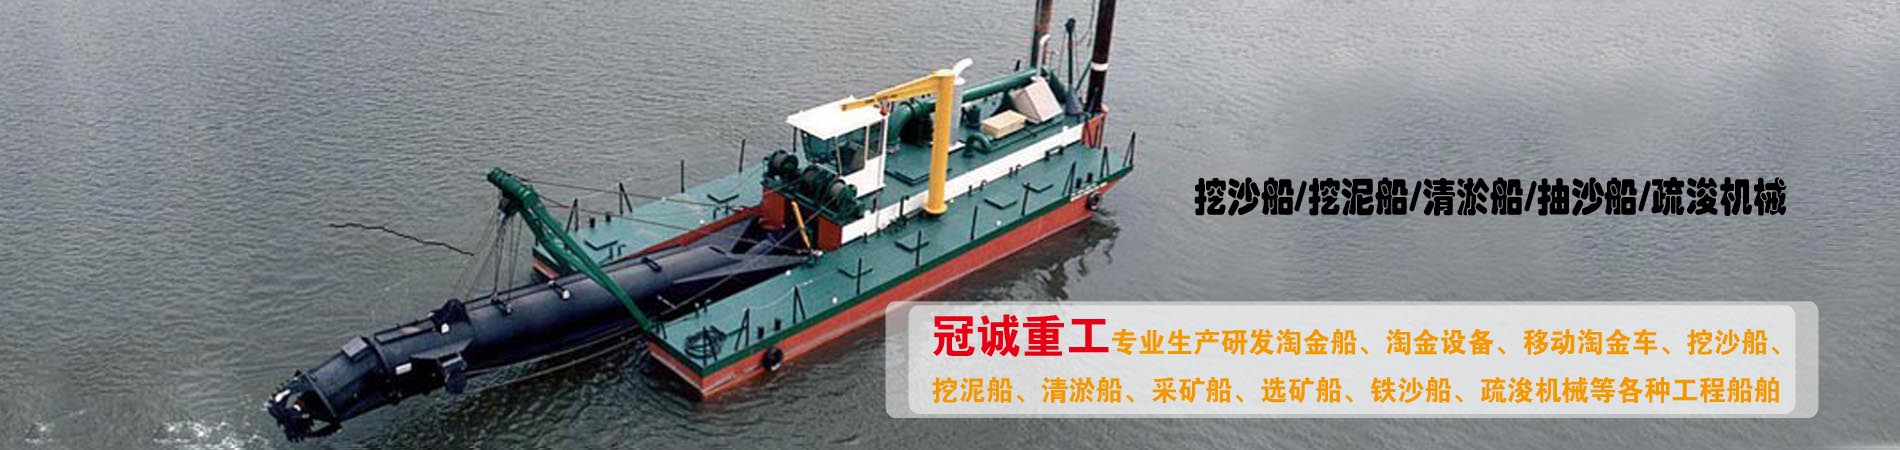 山东潍坊青州绞吸式挖金船-淘金船-选金船-采金船生产厂家